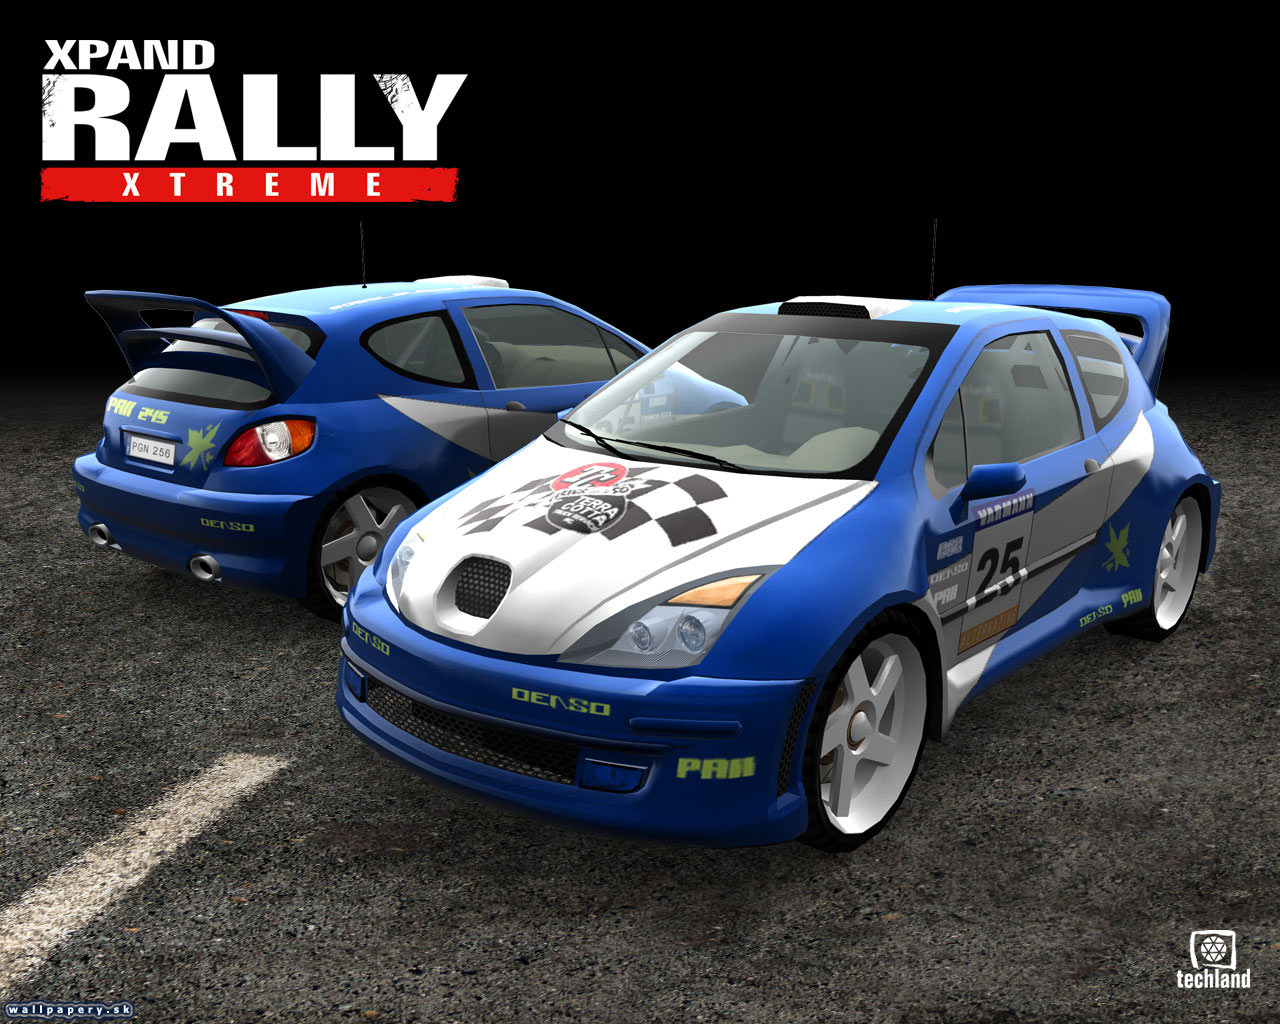 Xpand Rally Xtreme - wallpaper 2